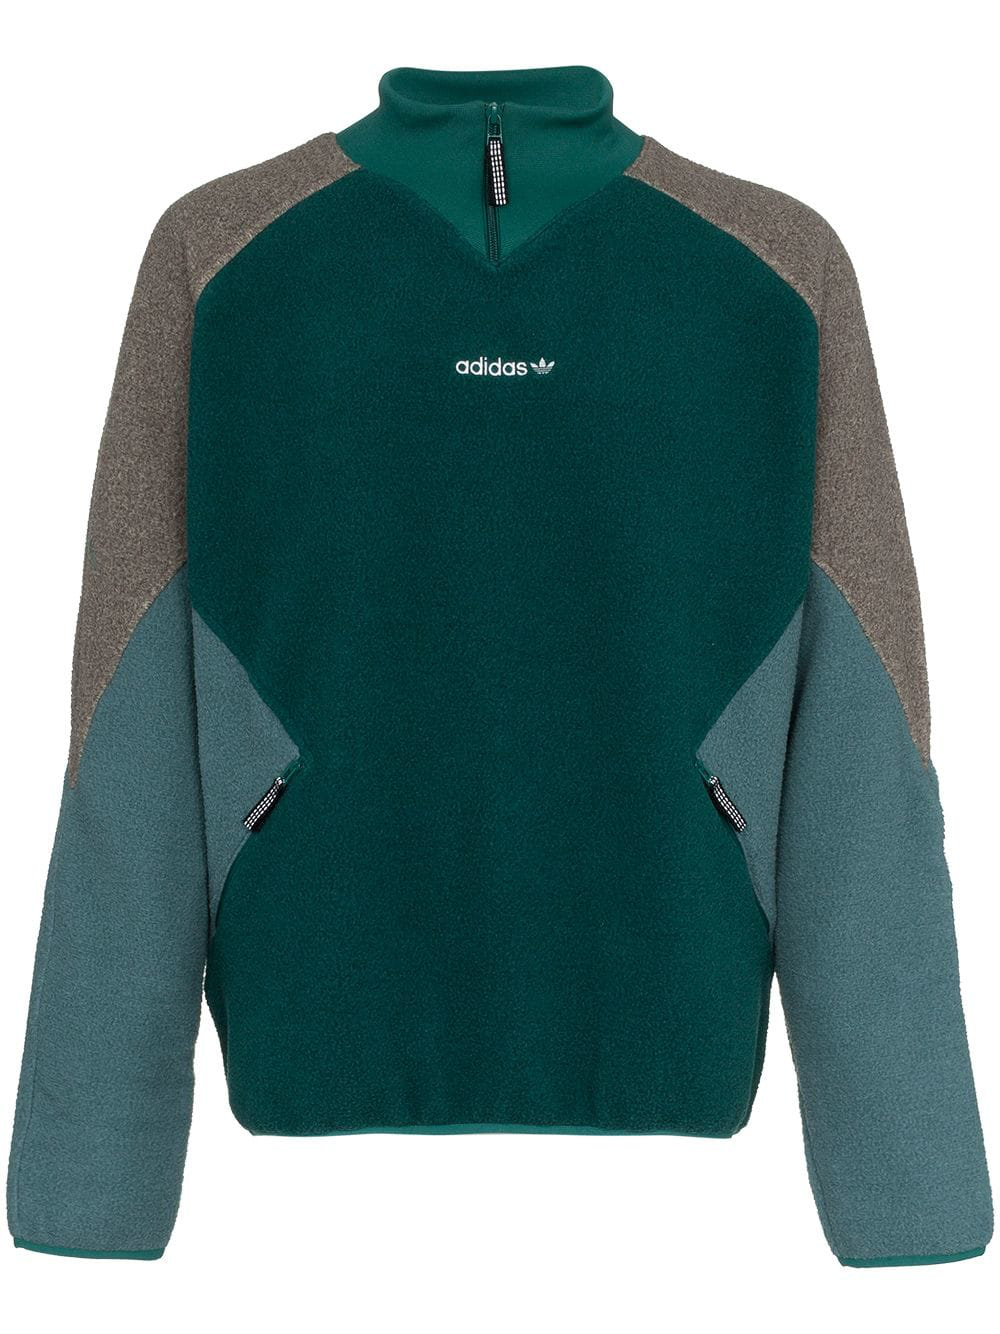 adidas originals eqt polar fleece jacket in green